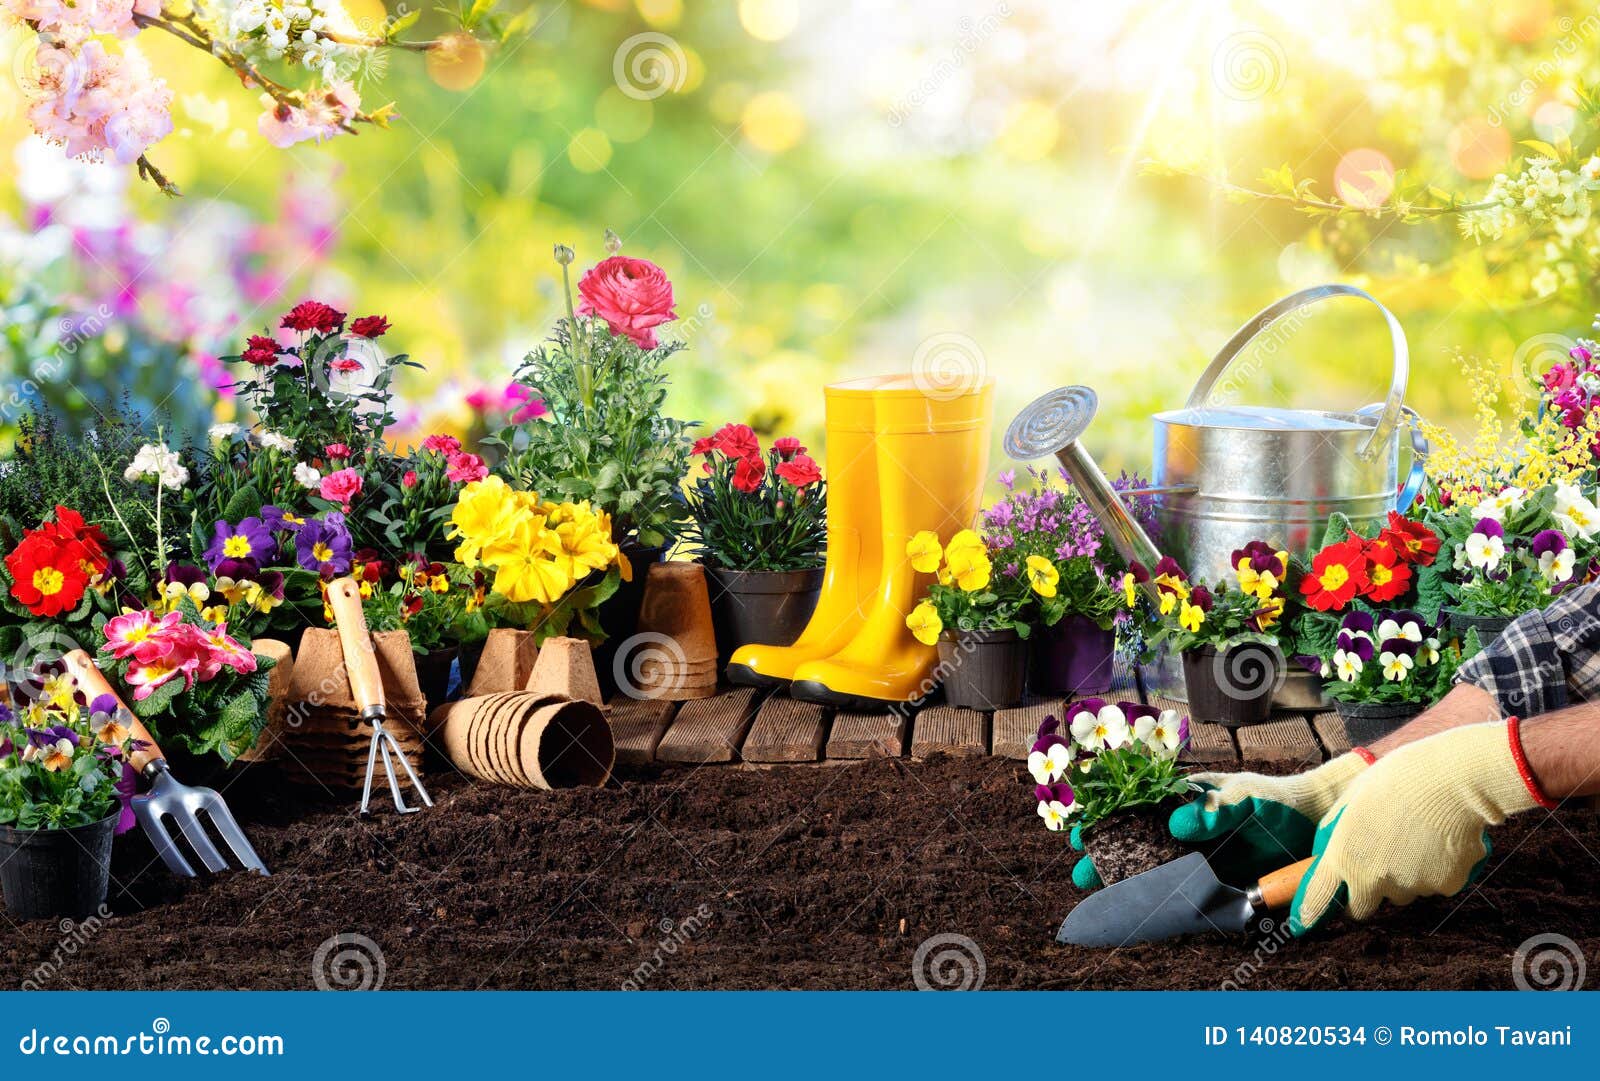 gardening - equipment for gardener and flower pots